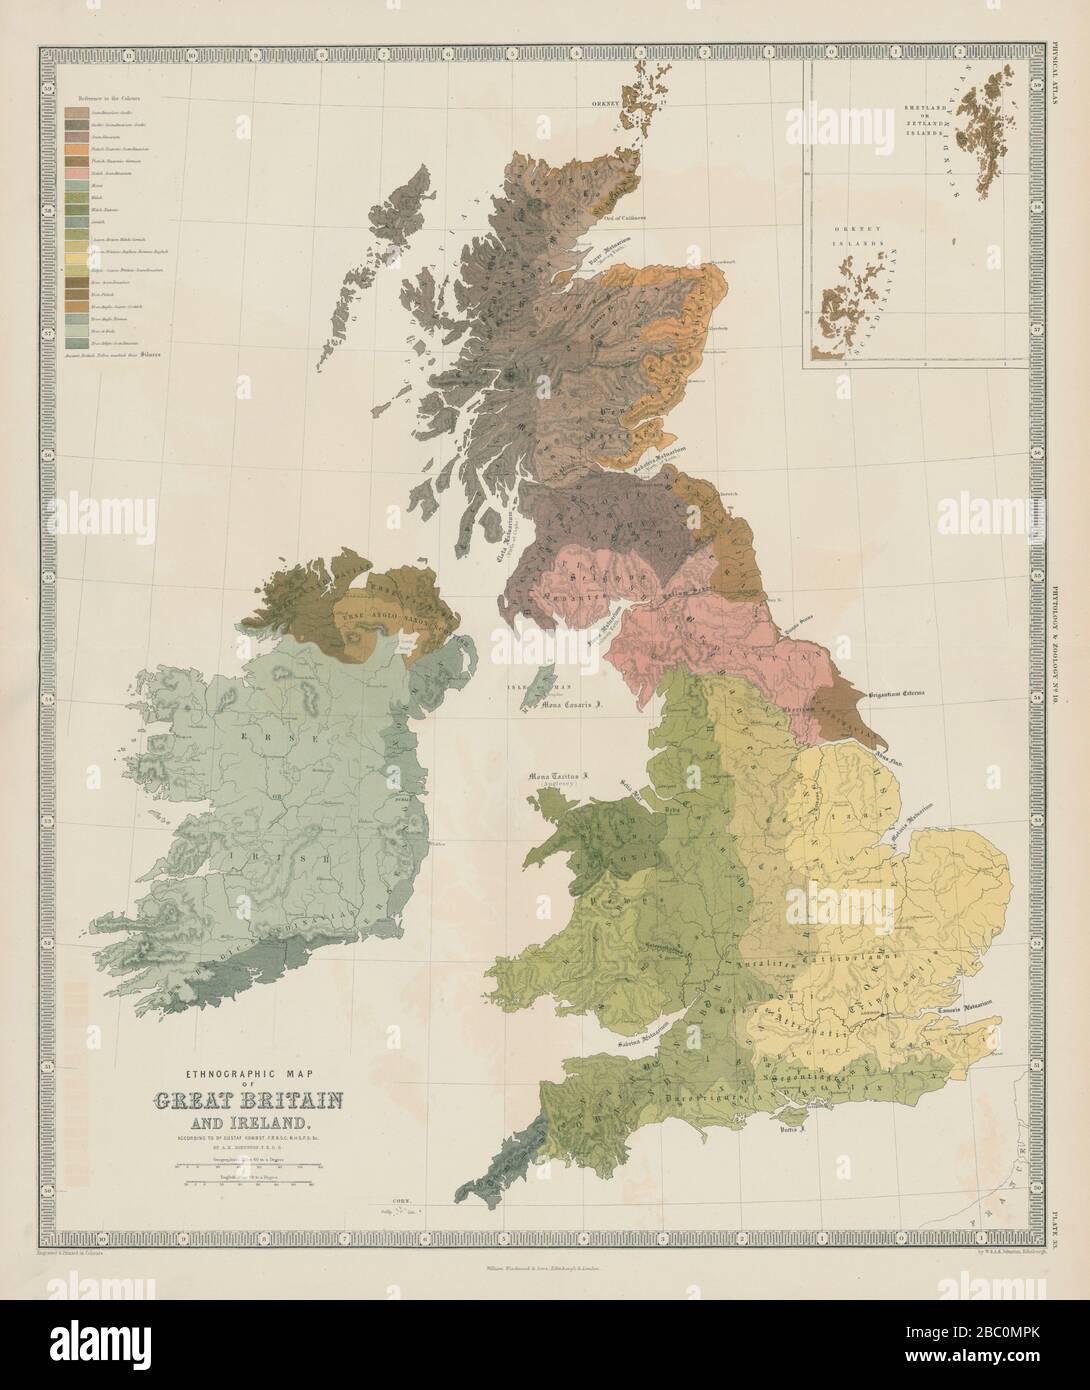 Mapa etnográfico de Gran Bretaña e Irlanda. Etnias. JOHNSTON 1856 Foto de stock